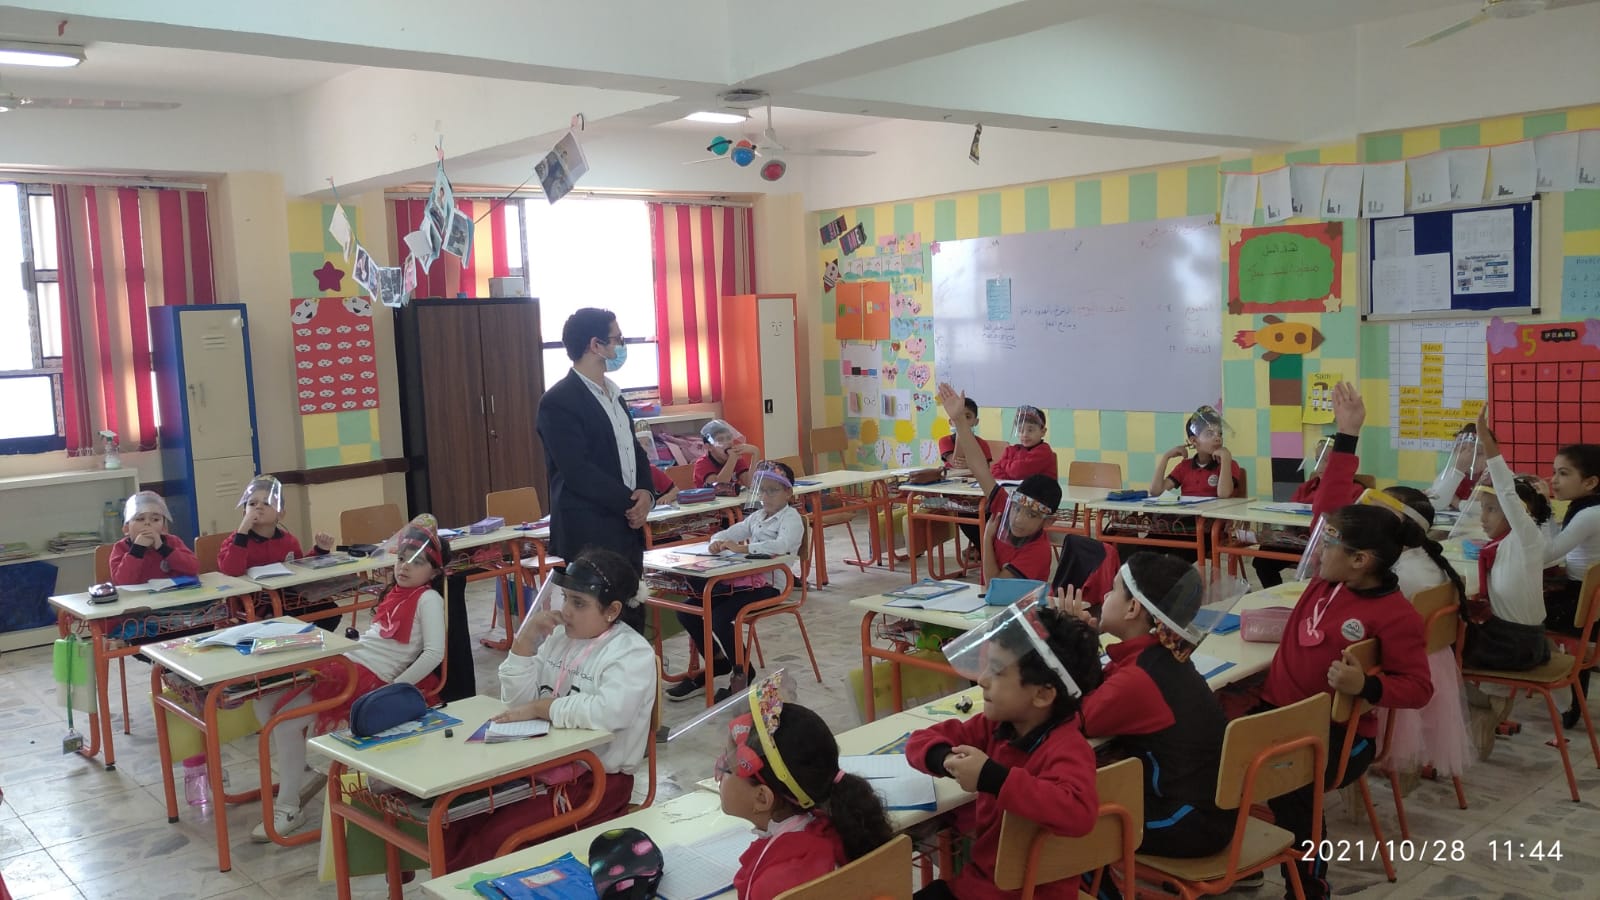 جولة داخل أحدث مدرسة يابانية فى كفر الشيخ